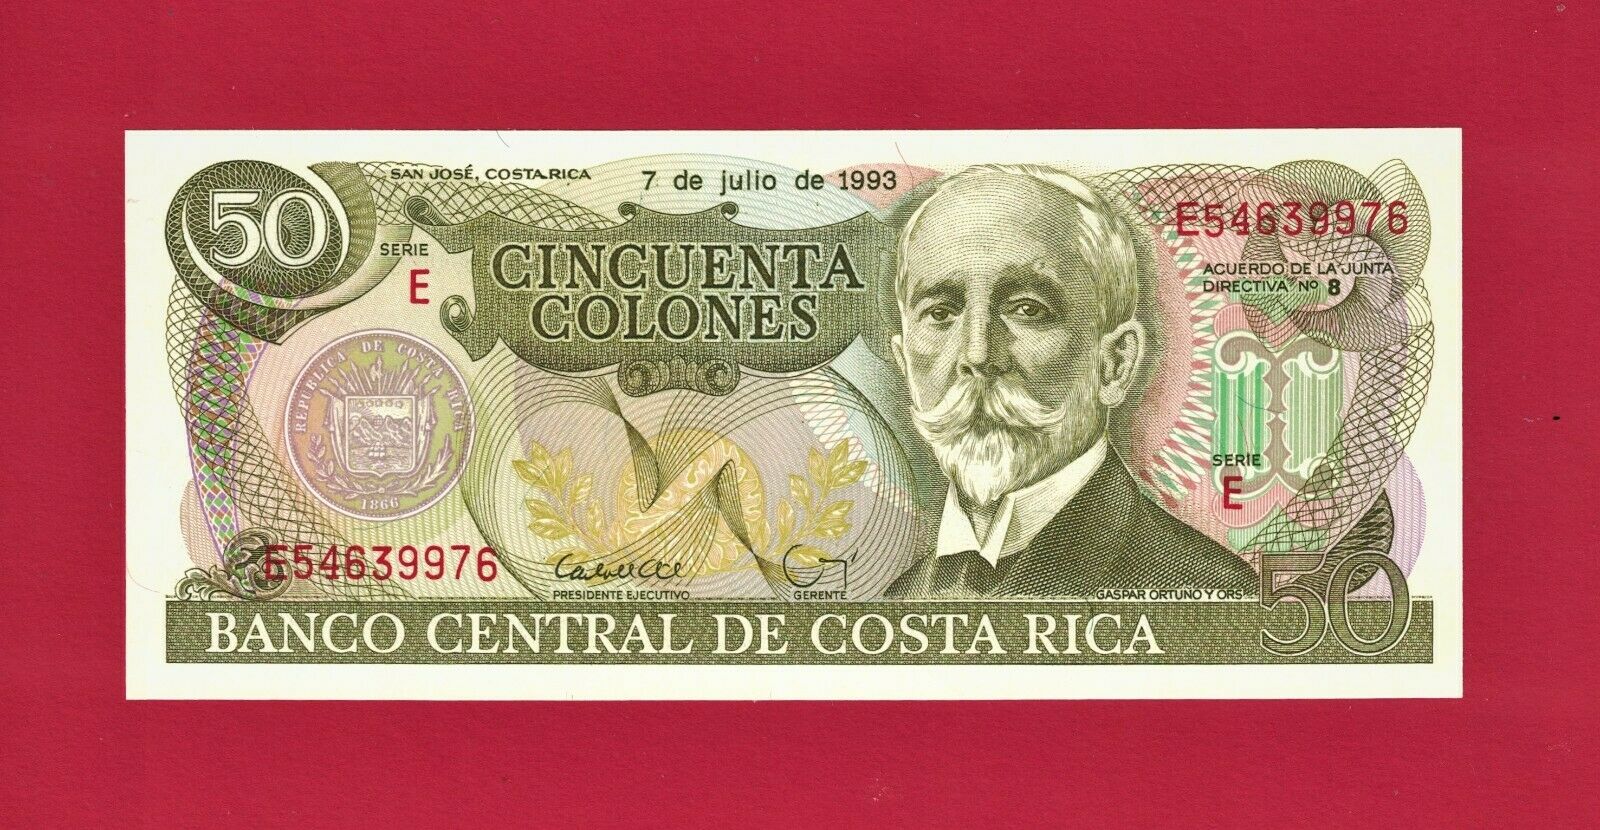 50 Cinquenta Colones 1993 Unc Costa Rica Note (p-257a.5) Last Issue In The Serie